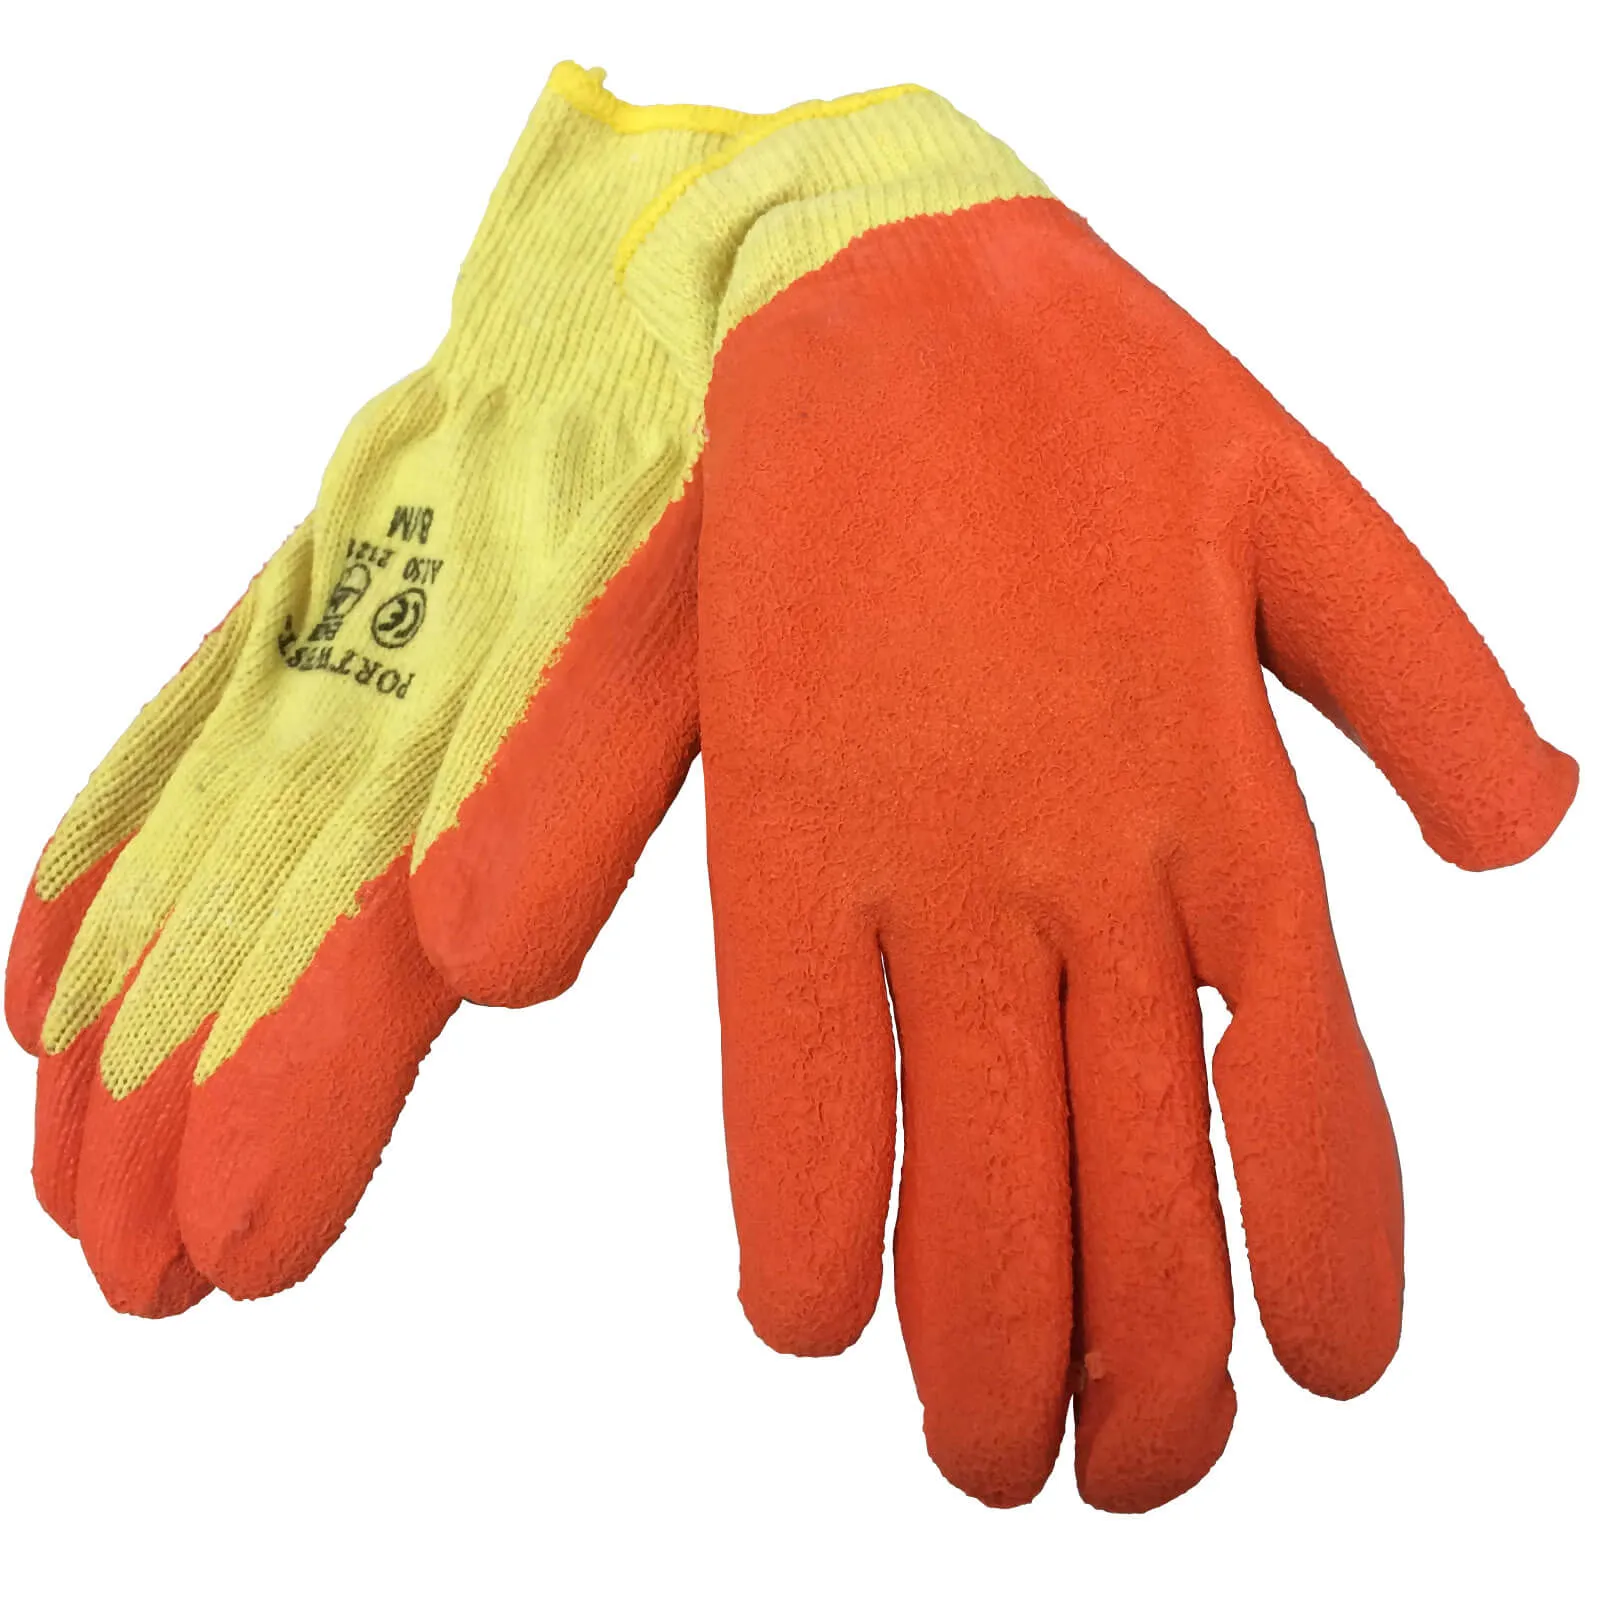 Sirius Builders Grip Gloves - XL